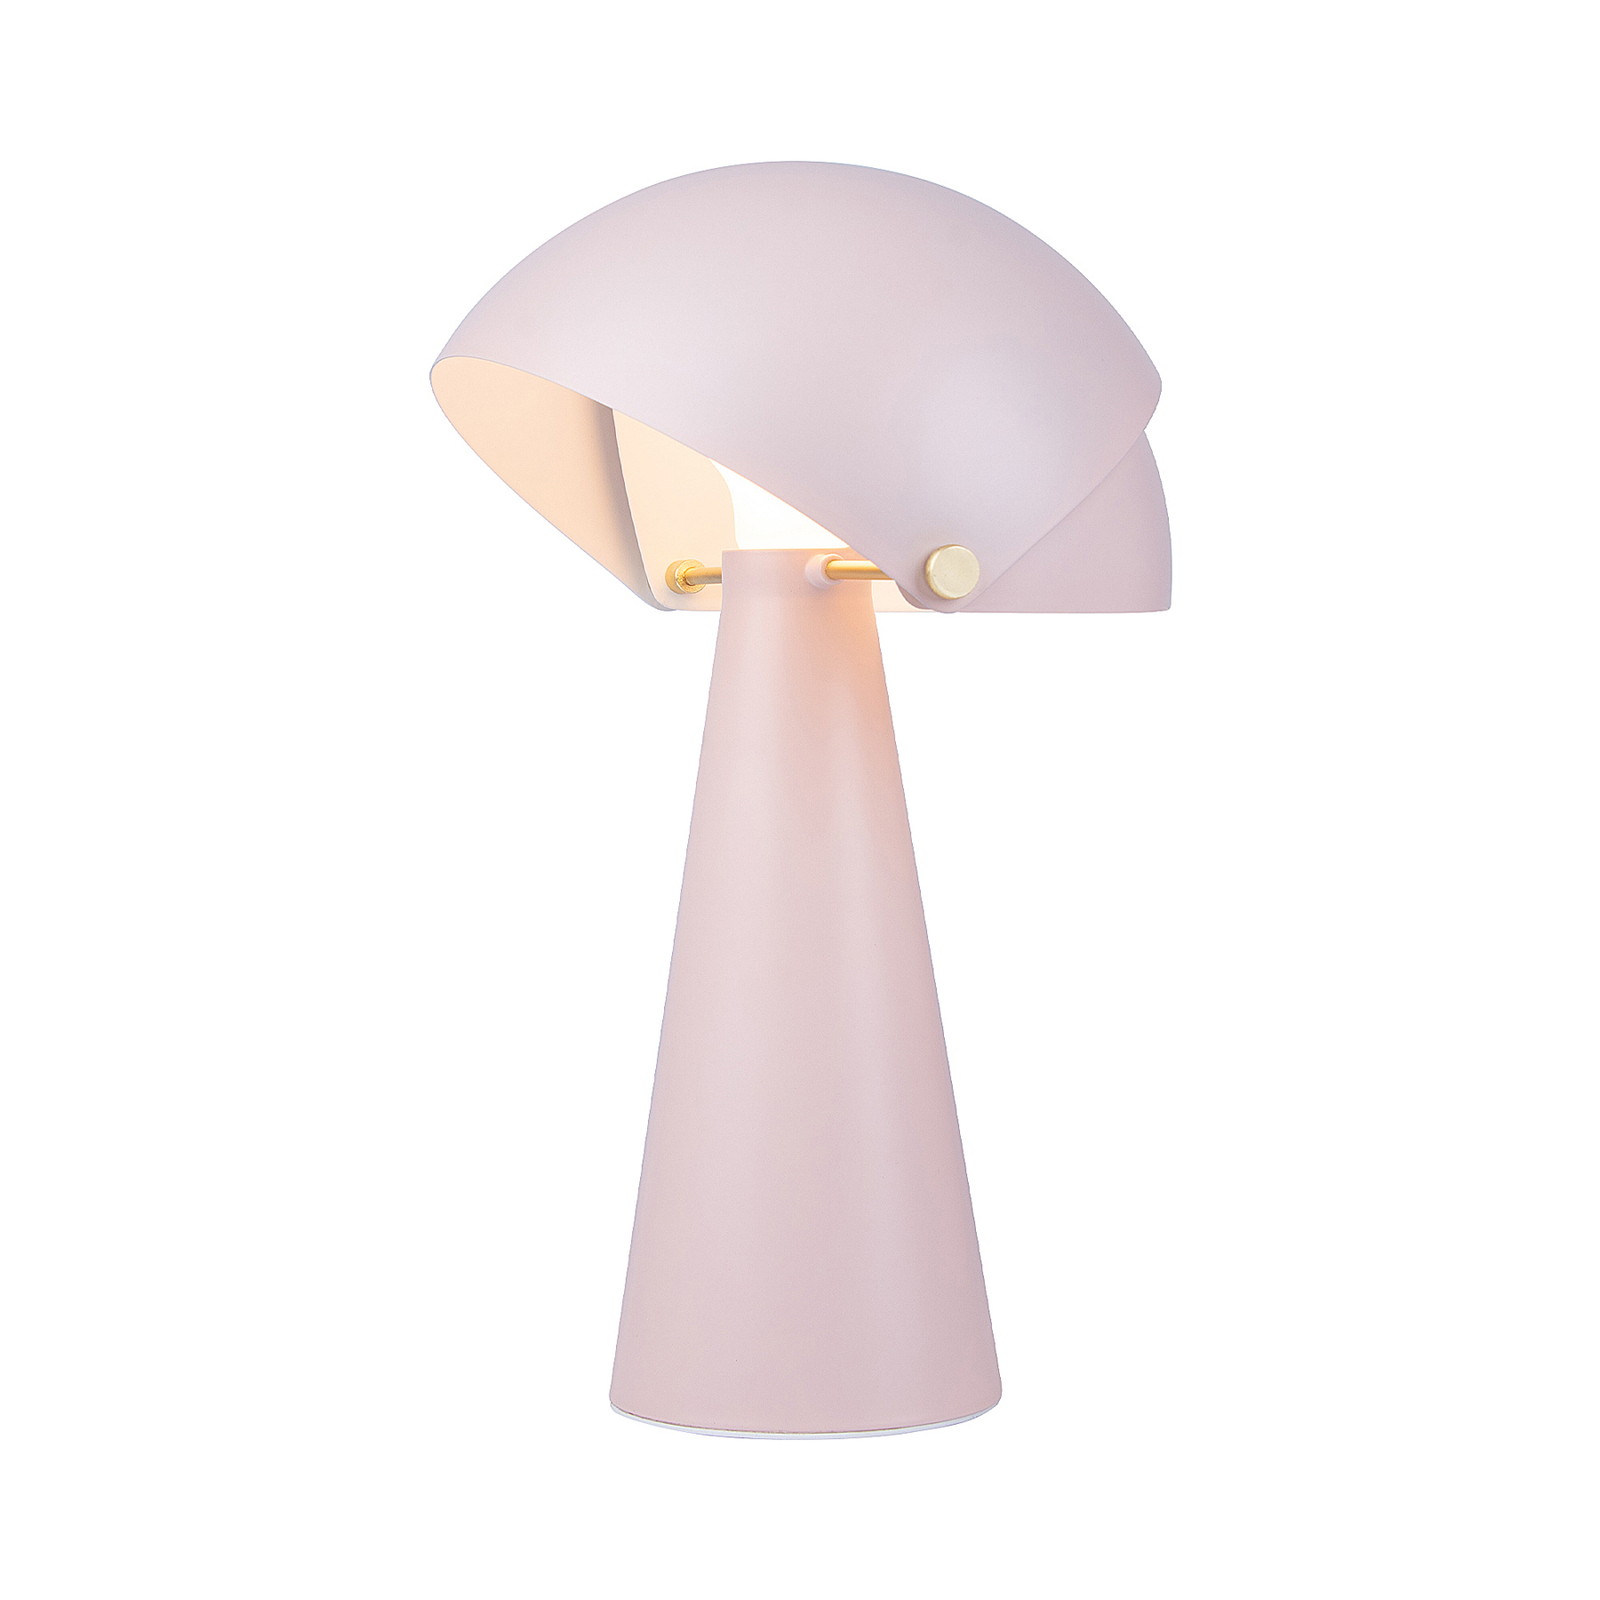 Tafellamp Align met kantelbare kap, roze